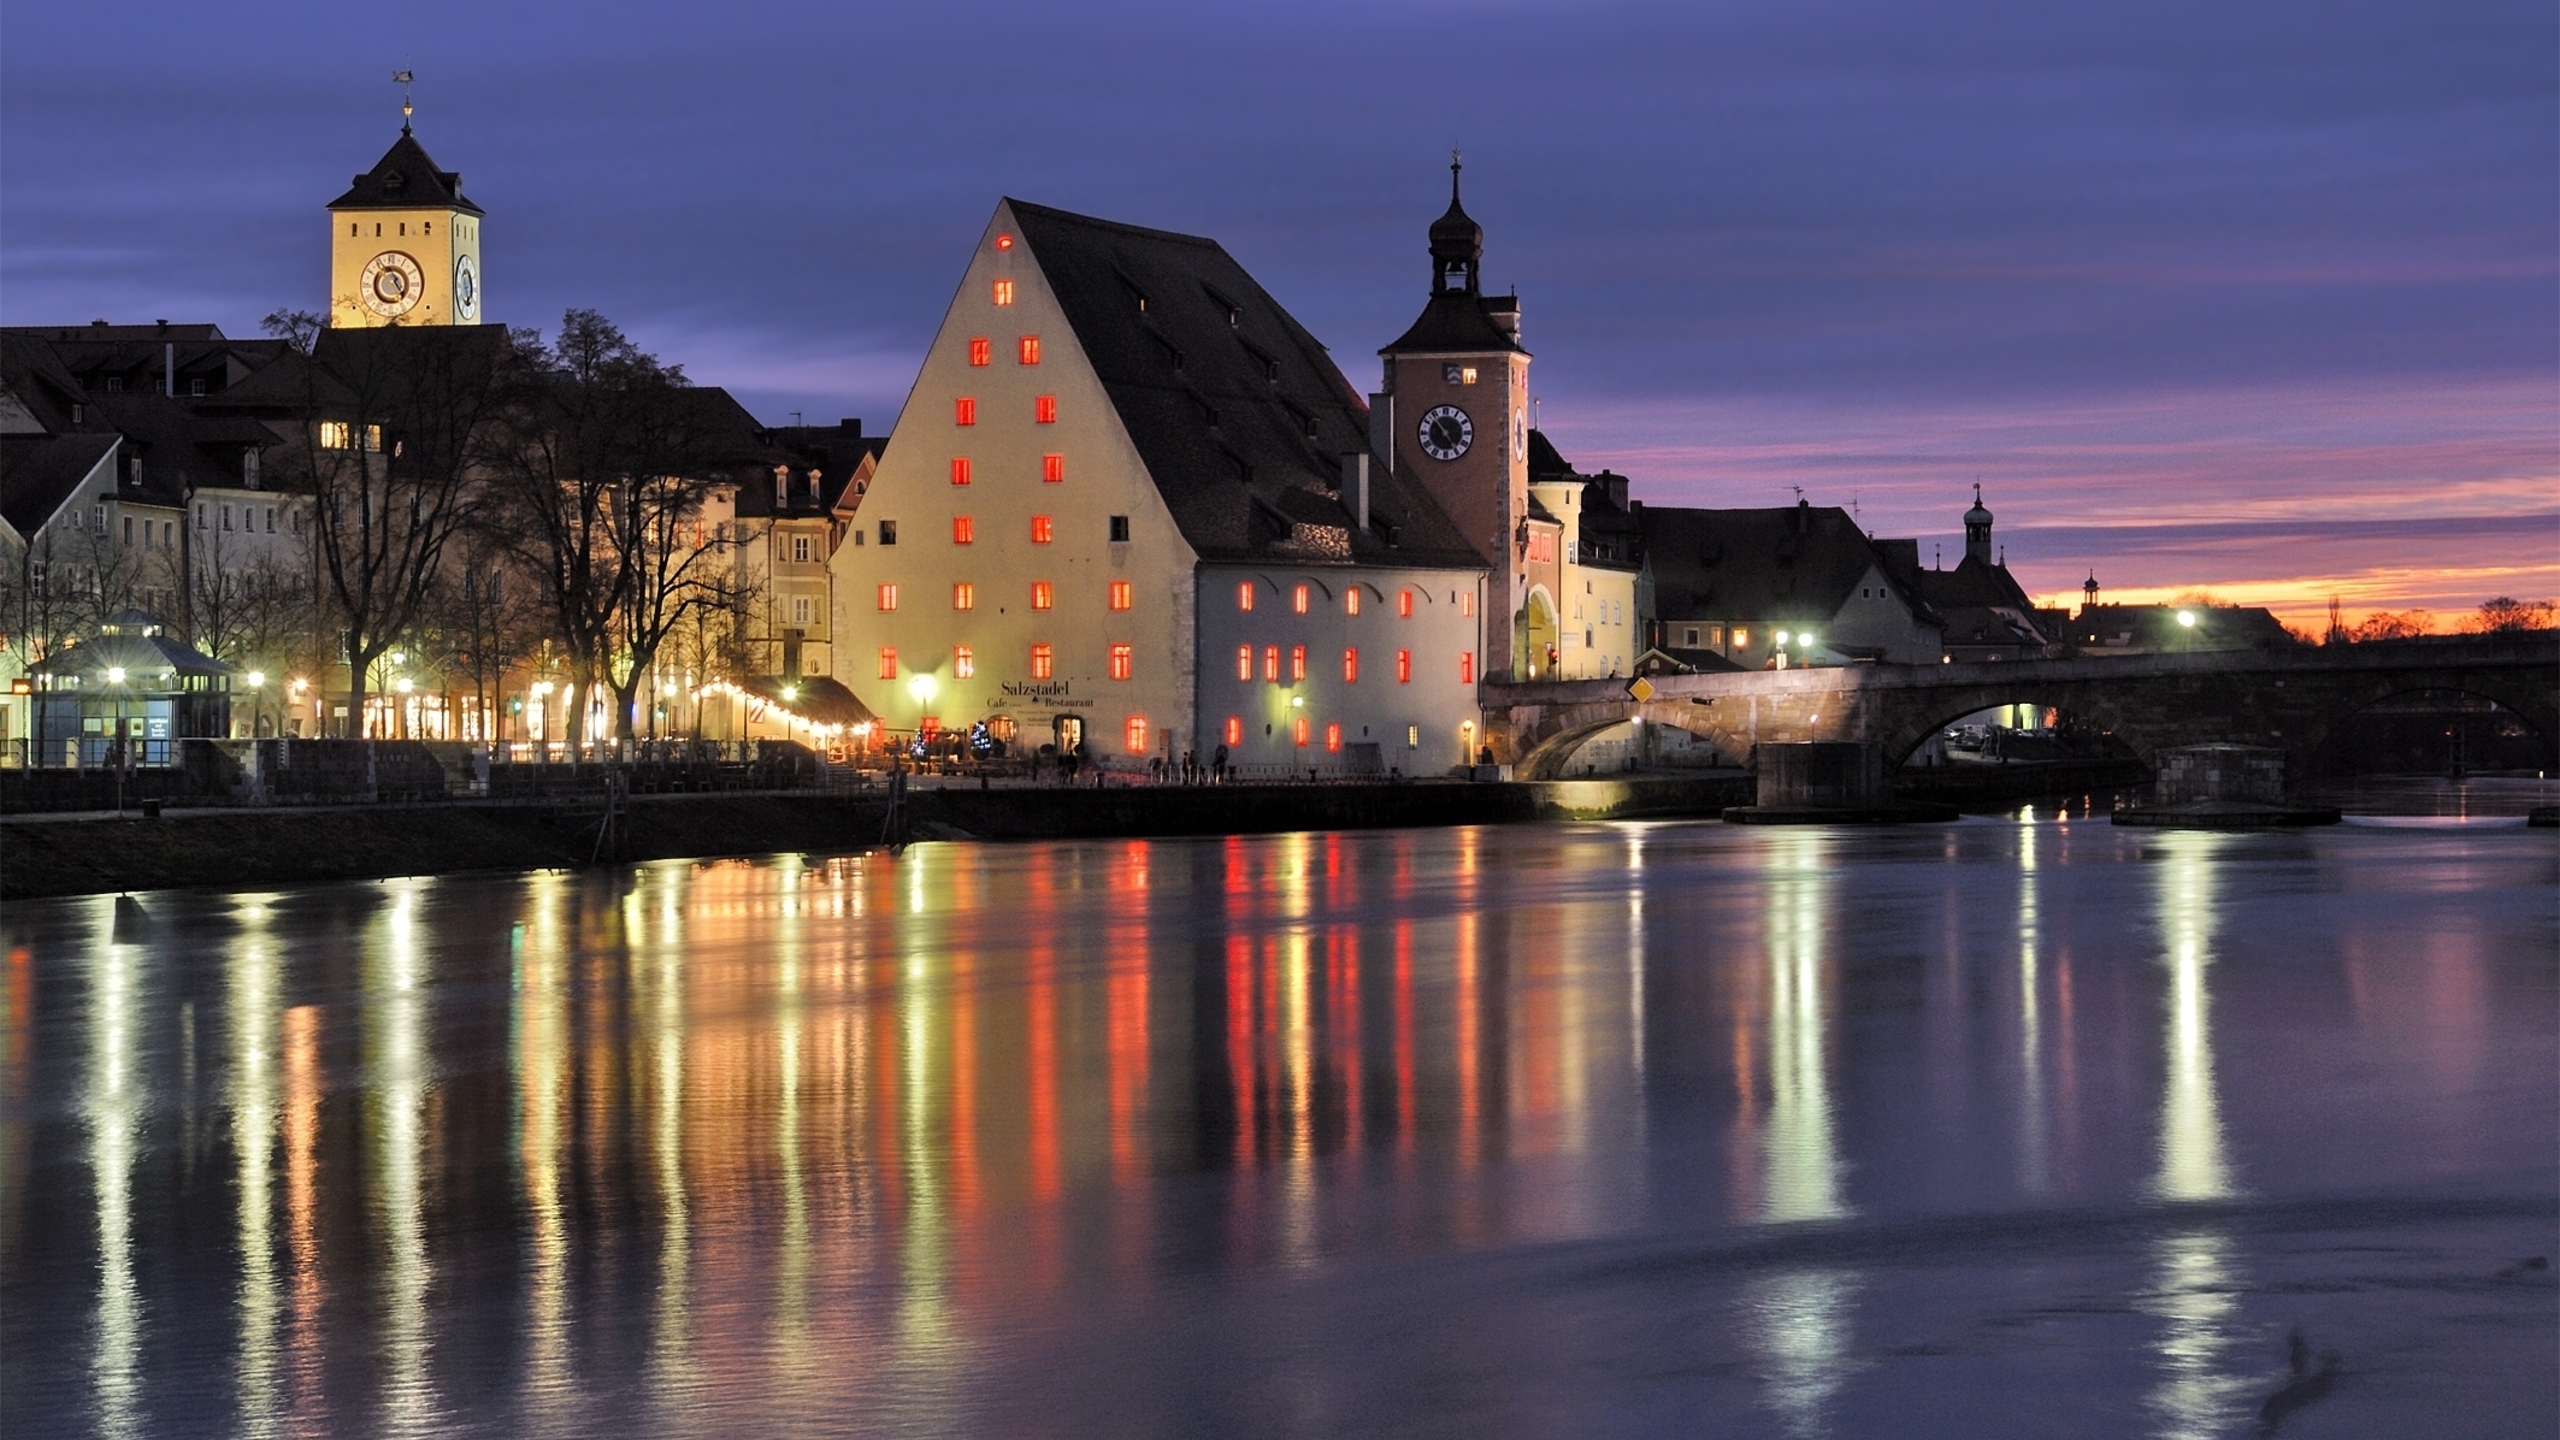 Regensburg Bavaria for 2560x1440 HDTV resolution